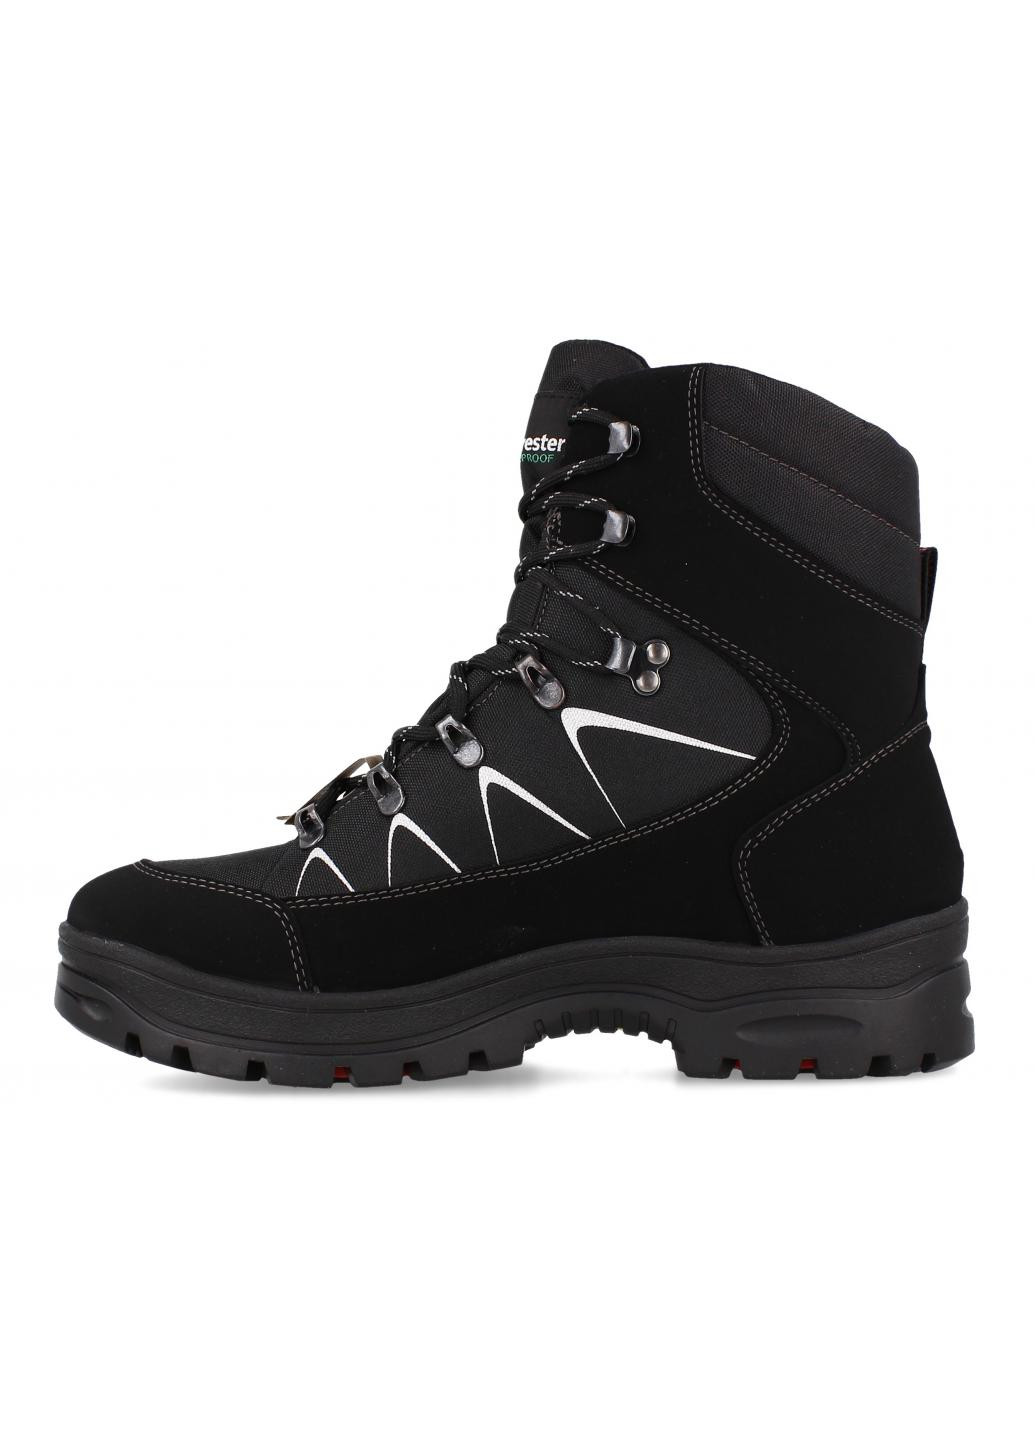 Черные зимние мужские ботинки tex uomo rotor 7442r-1 oc system tipper Forester